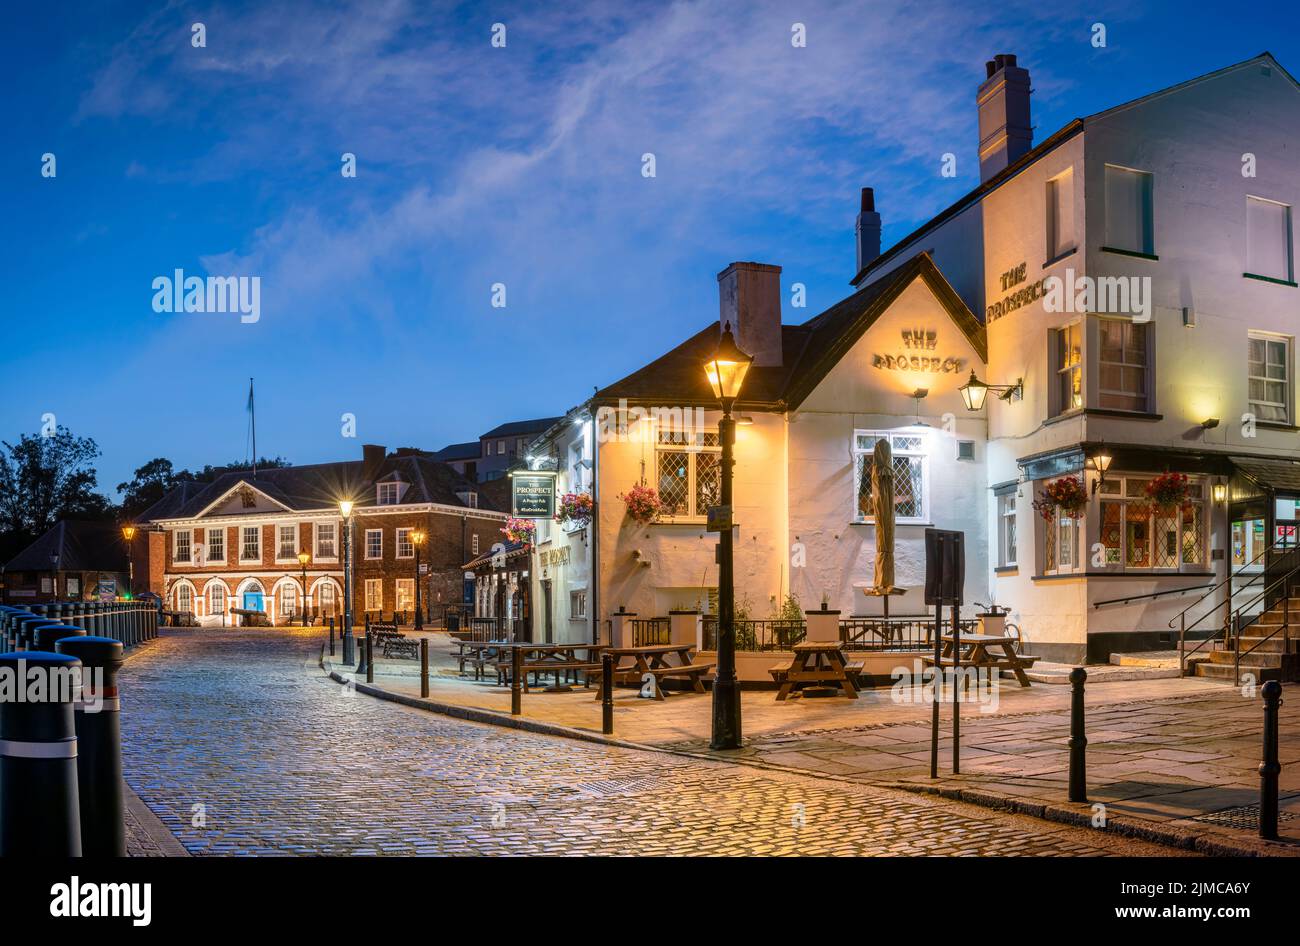 La storica Quayside di Exeter è una delle zone più attraenti della città. Un mix di storia affascinante, architettura interessante e pub vivaci e. Foto Stock